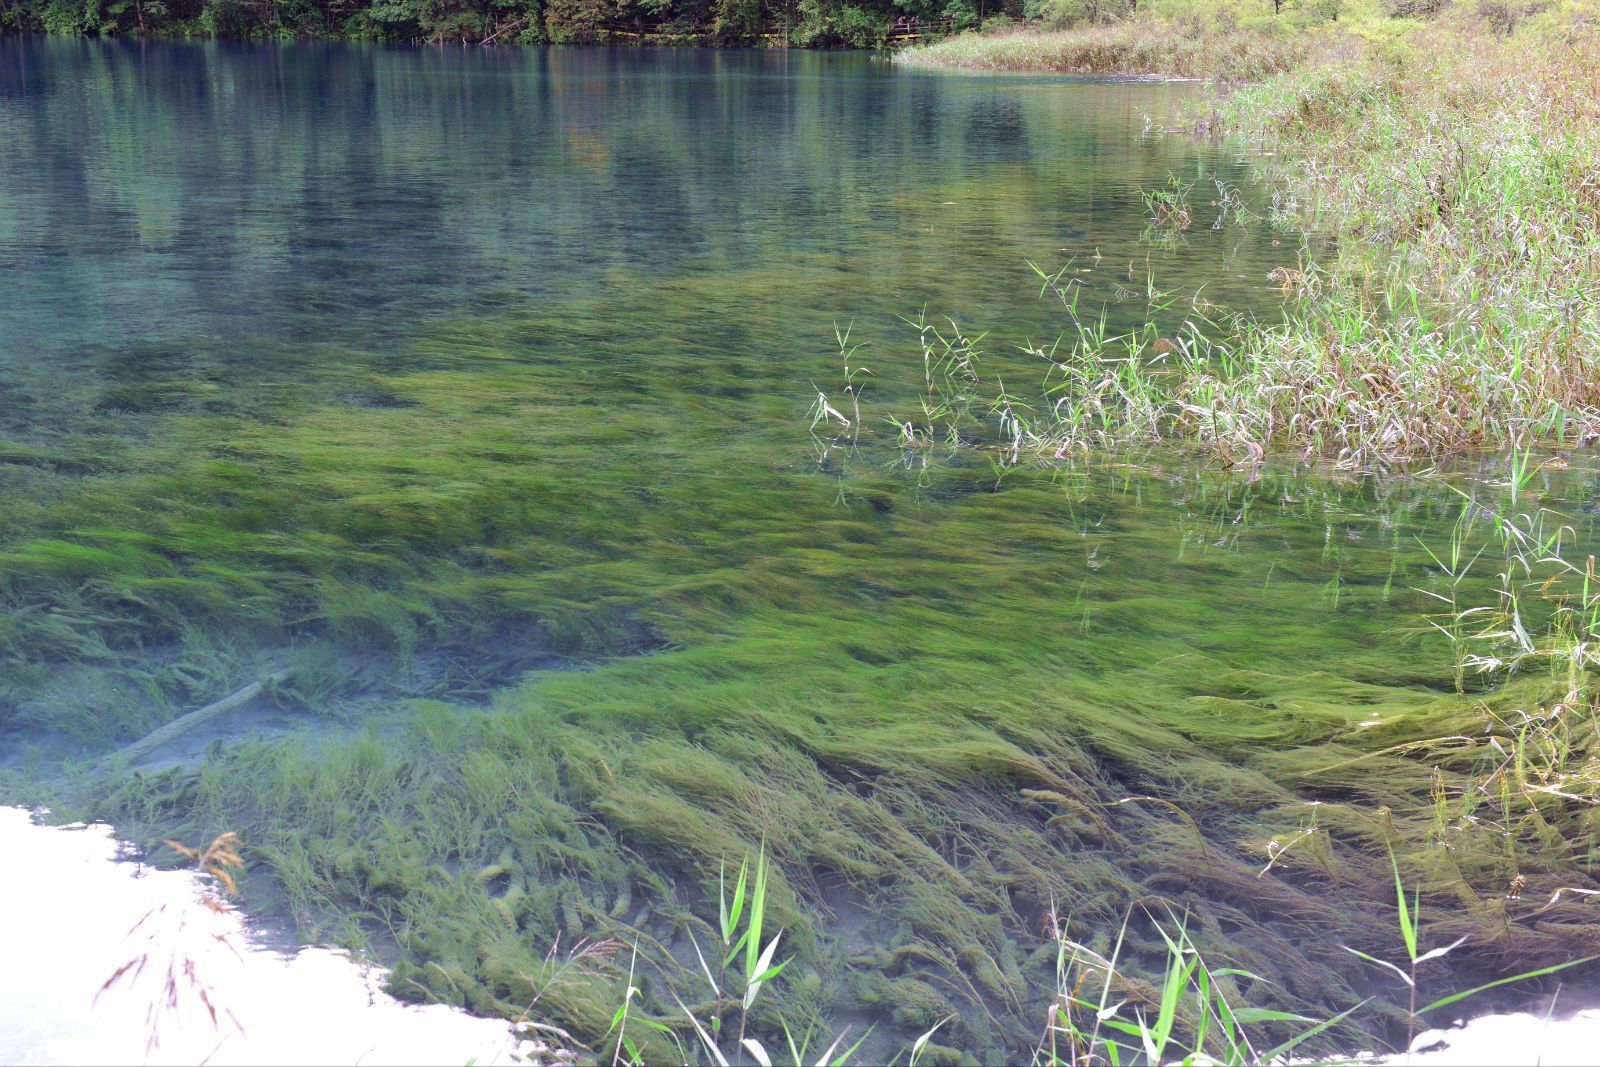 绿色水草被蓝色水流带向同一个方向,相当的美! 熊猫海